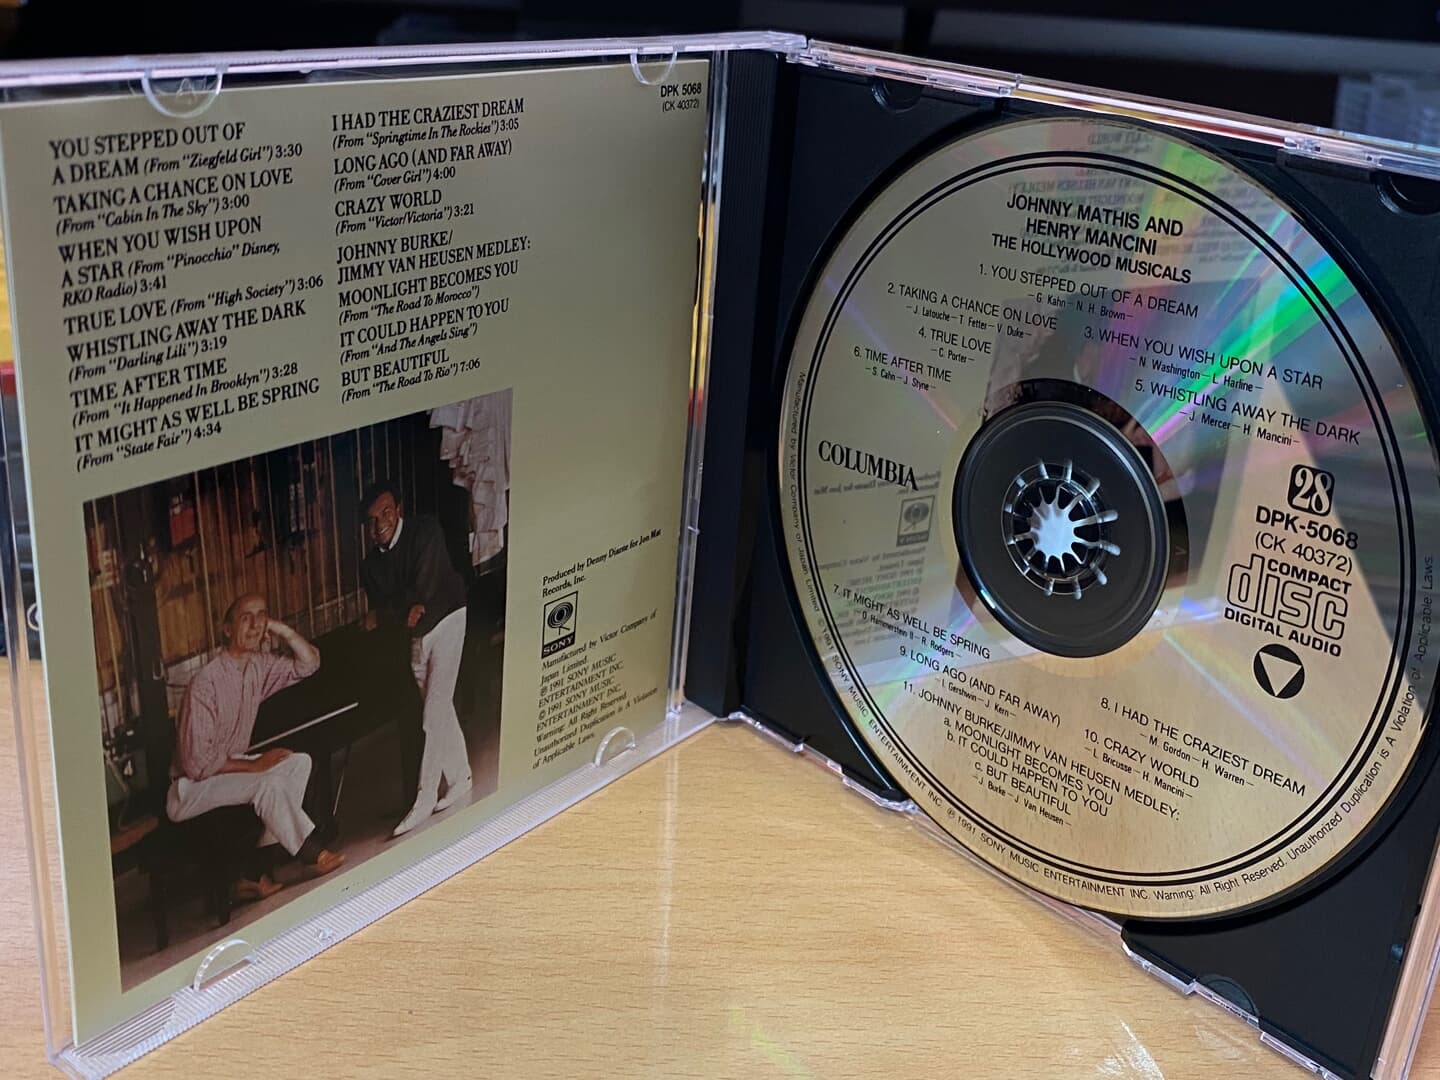 조니 마티스 & 헨리 맨시니 - Johnny Mathis & Henry Mancini - The Hollywood Musicals [일본제작-국내발매]